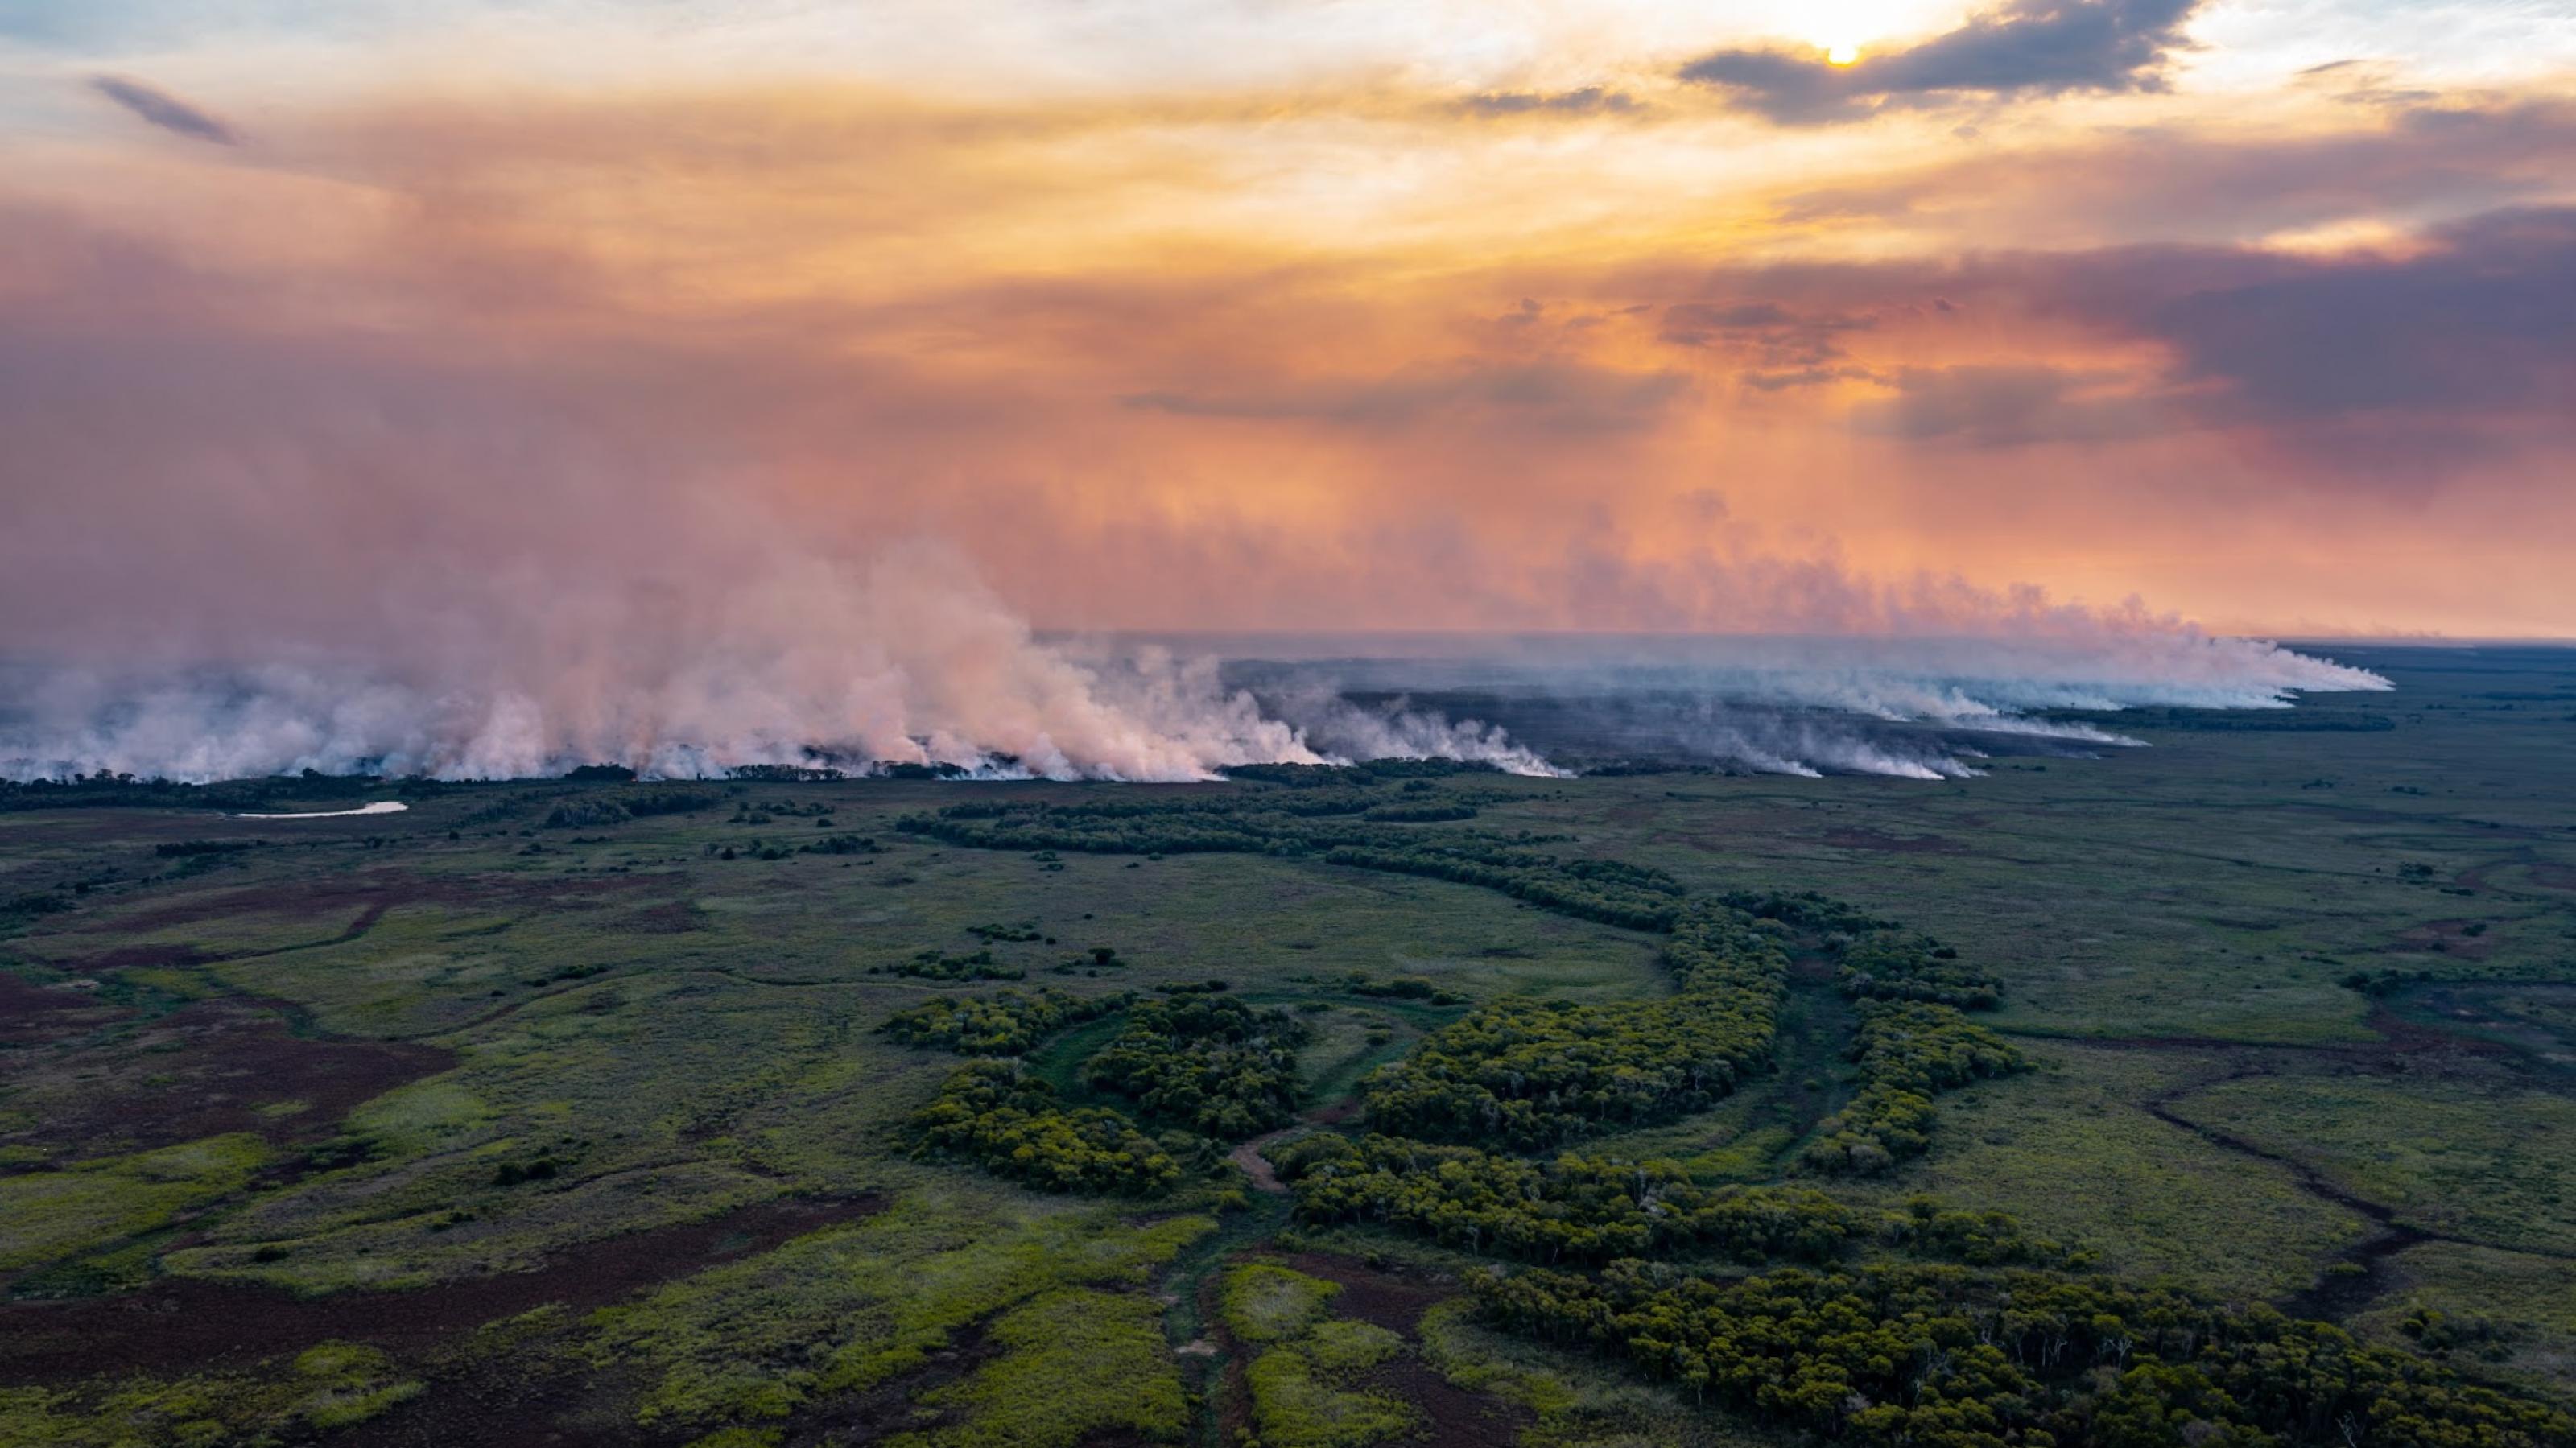 Totale aus Vogelperspektive. Blick auf Feuchtgebiet Pantanal – im Hintergrund große Rauchwolken.